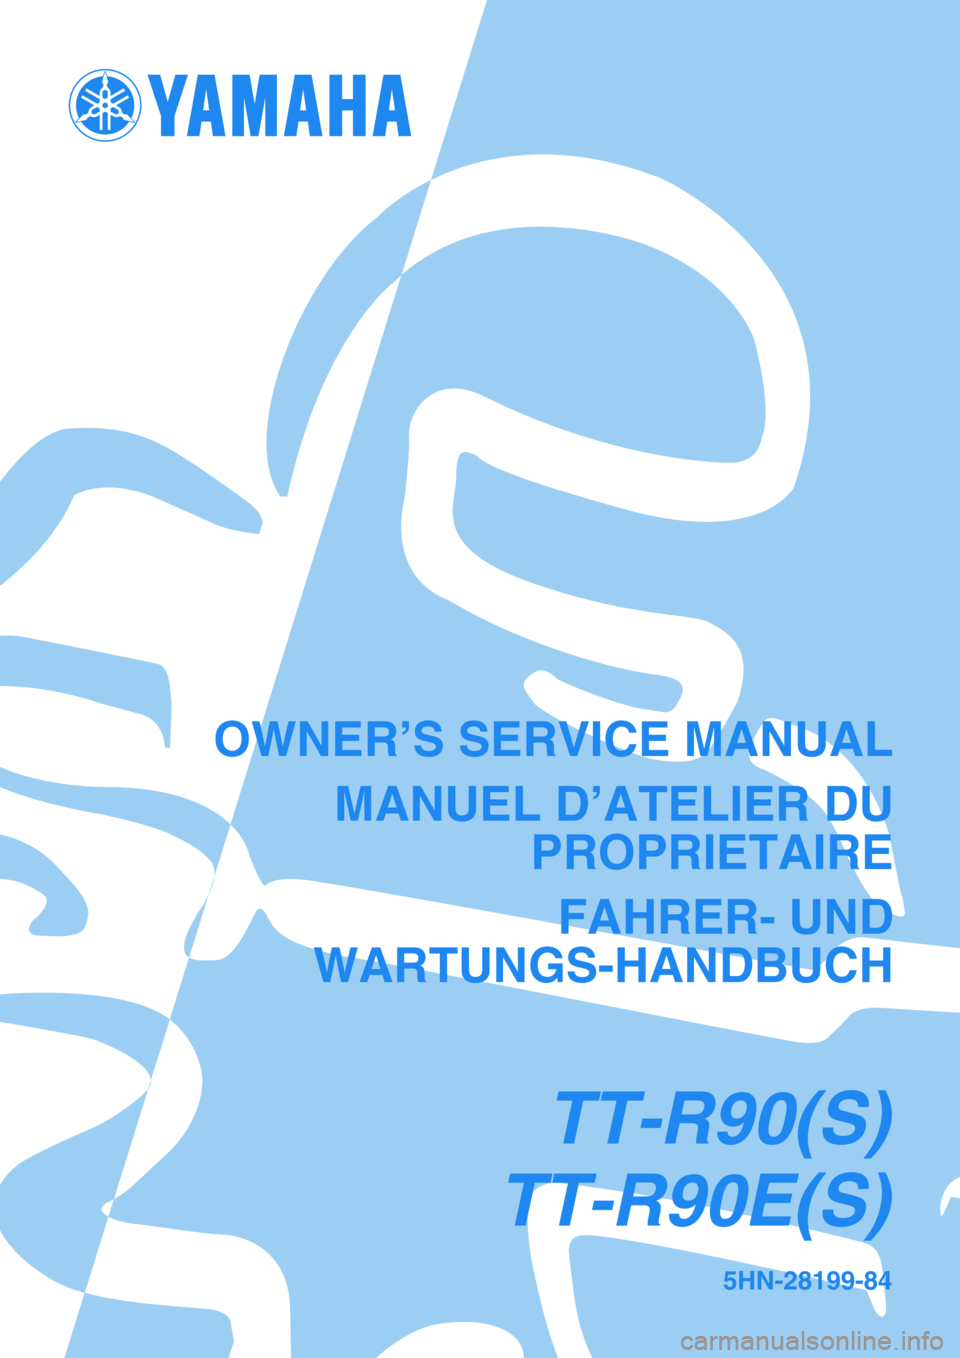 YAMAHA TTR90 2004  Owners Manual 5HN-28199-84
TT-R90(S)
TT-R90E(S)
OWNER’S SERVICE MANUAL
MANUEL D’ATELIER DU
PROPRIETAIRE
FAHRER- UND
WARTUNGS-HANDBUCH 